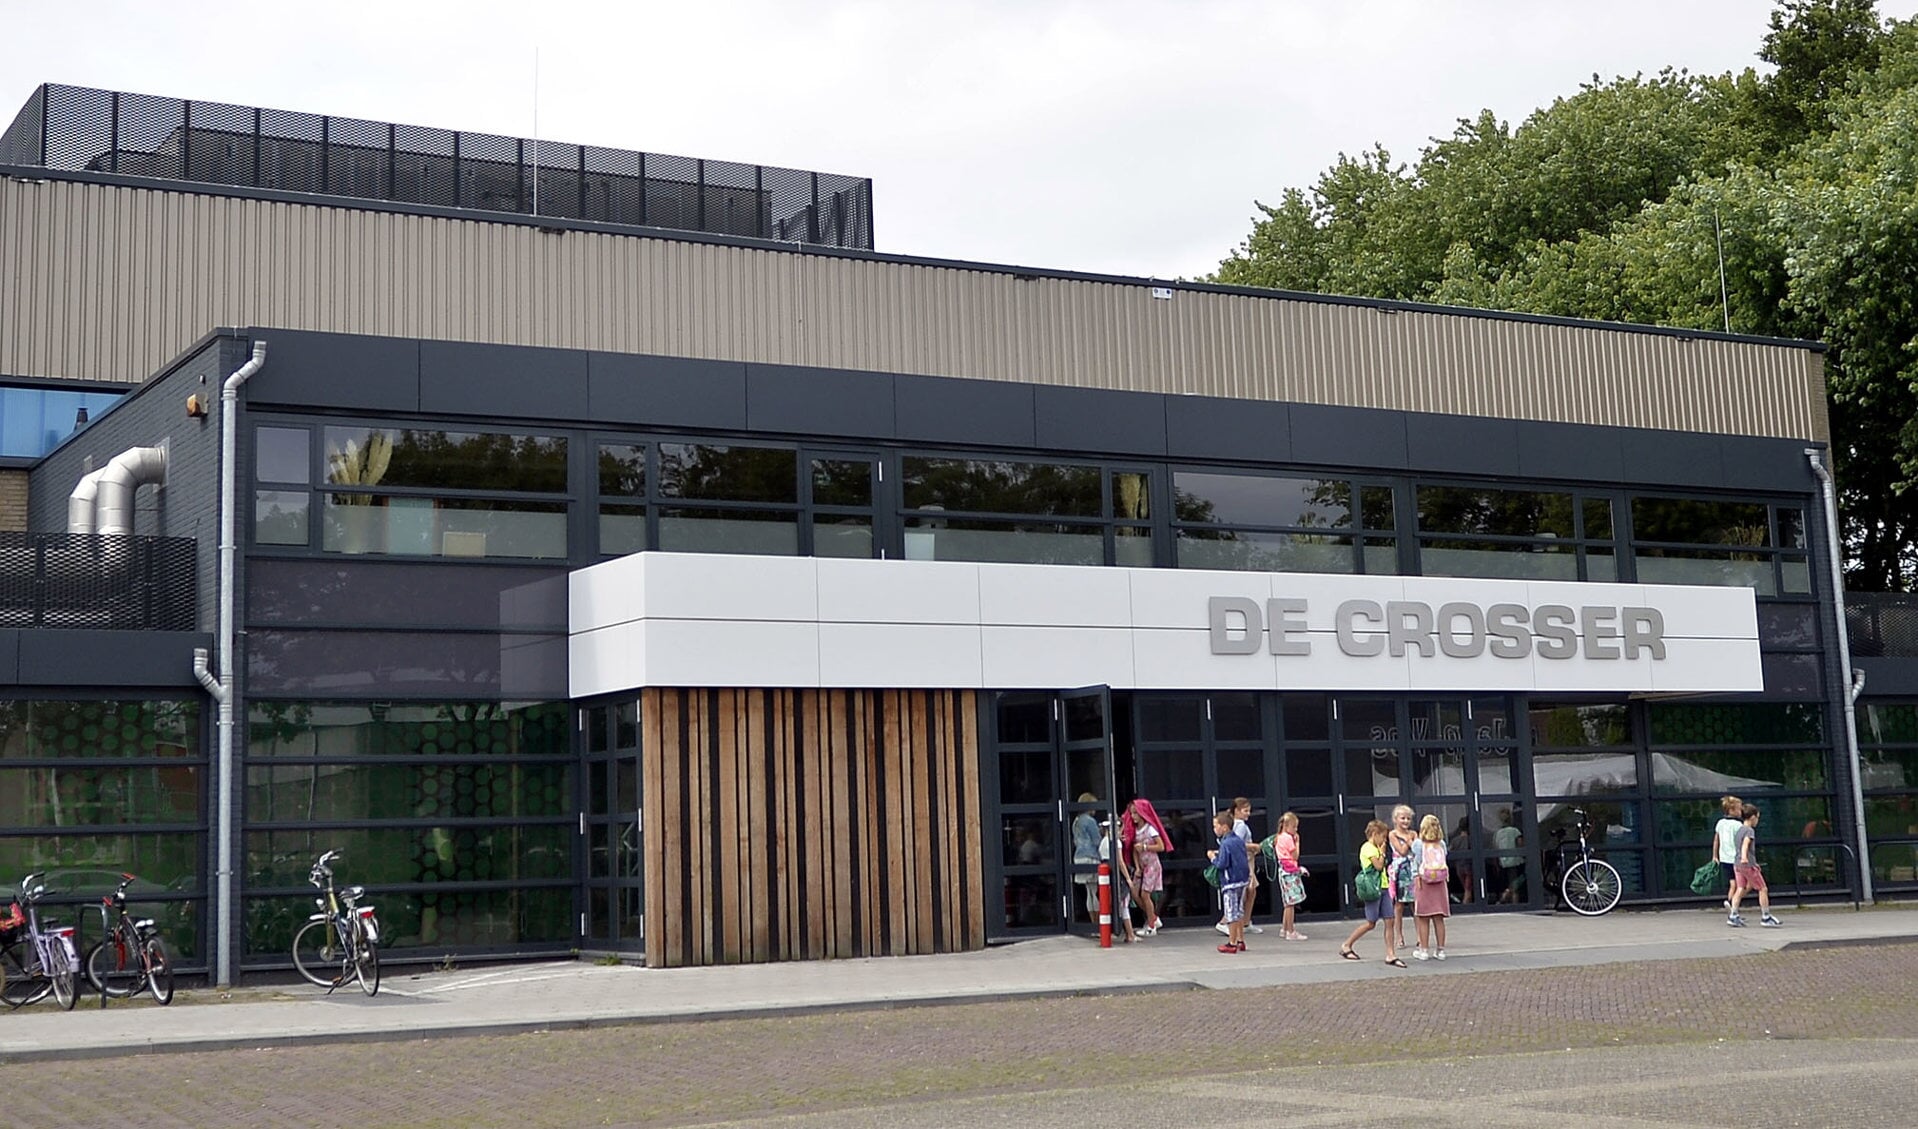 Als het aan AltenaLokaal ligt, komt er snel een oplossing voor het café in De Crosser.